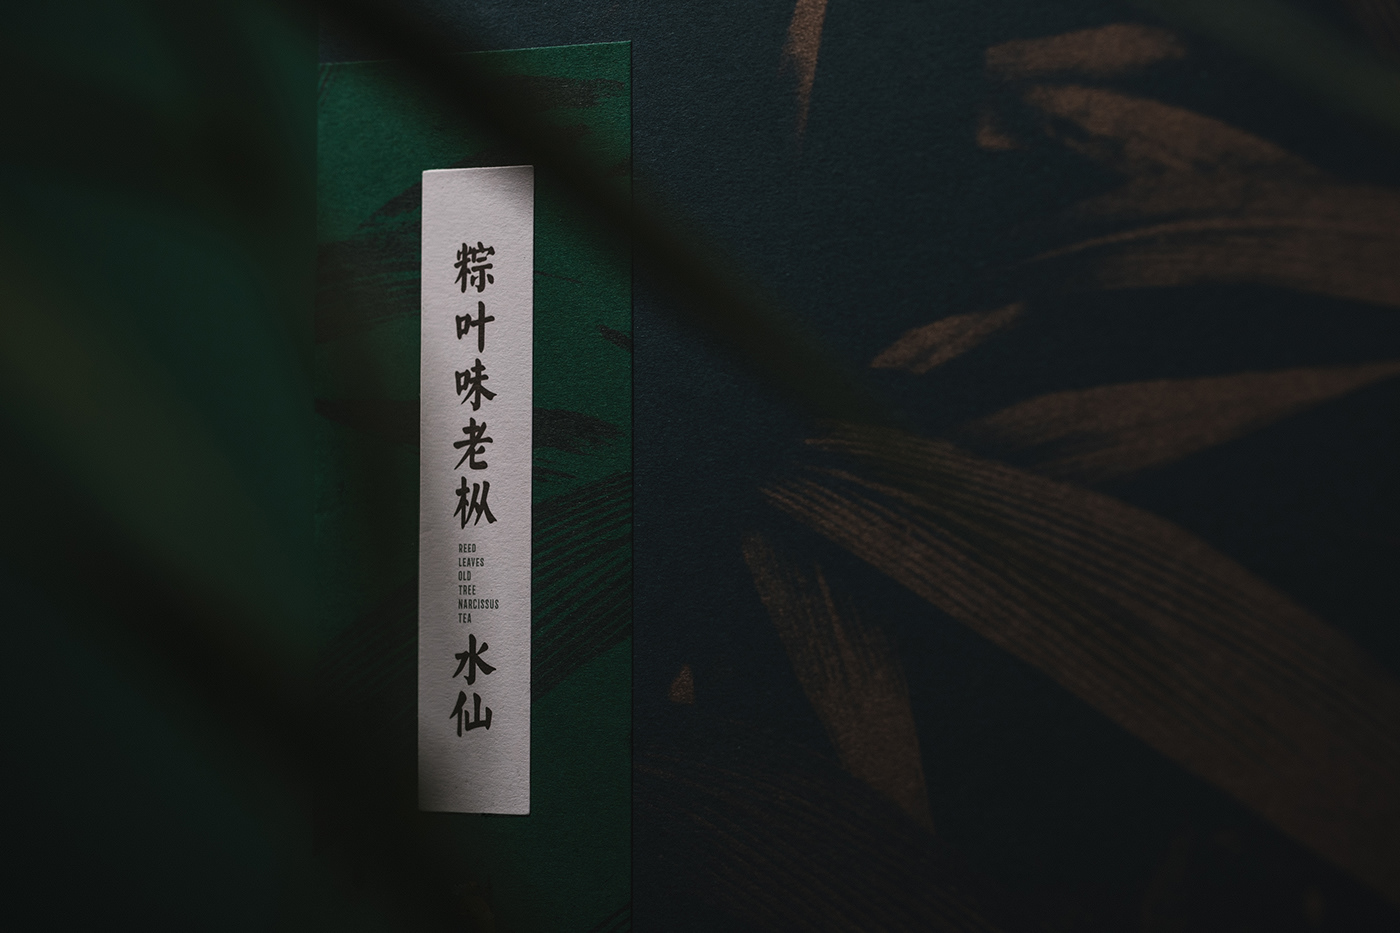 乌龙茶 老枞 水仙 岩茶 茶包装 中国 传统 东方 纹理 武夷